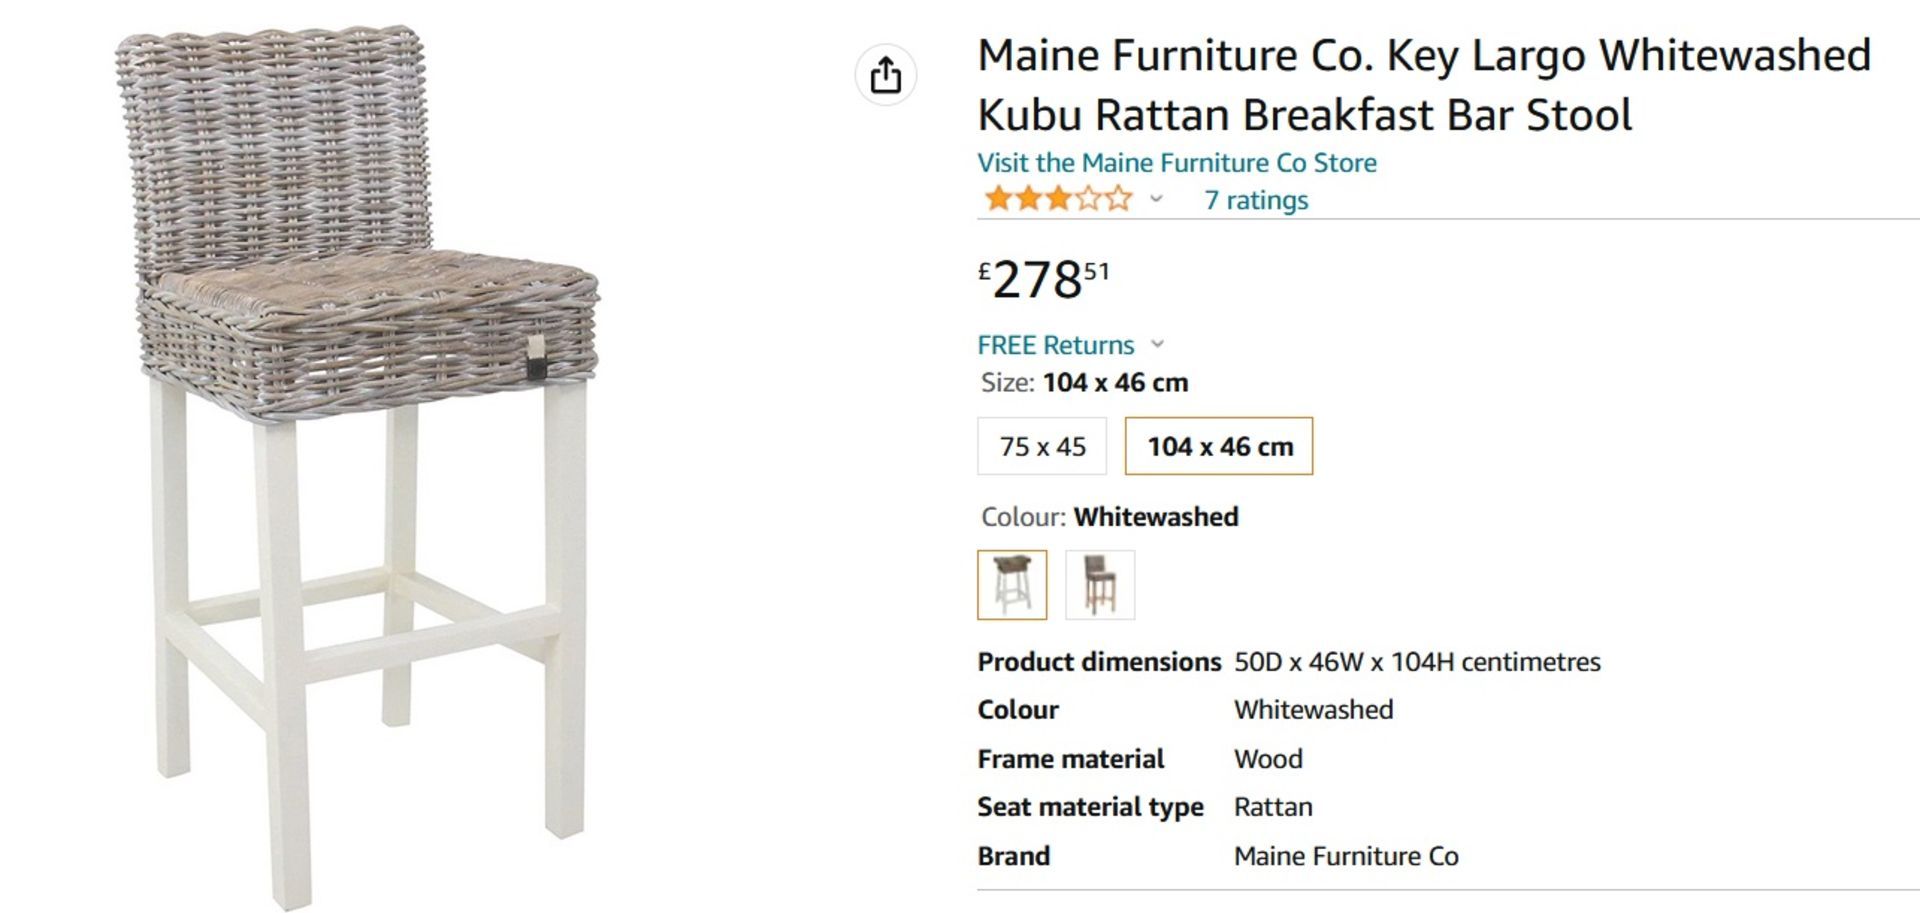 NEW & BOXED 2x Maine Furniture Co. Key Largo Whitewashed Kubu Rattan Breakfast Bar Stool. RRP £278. - Image 6 of 6